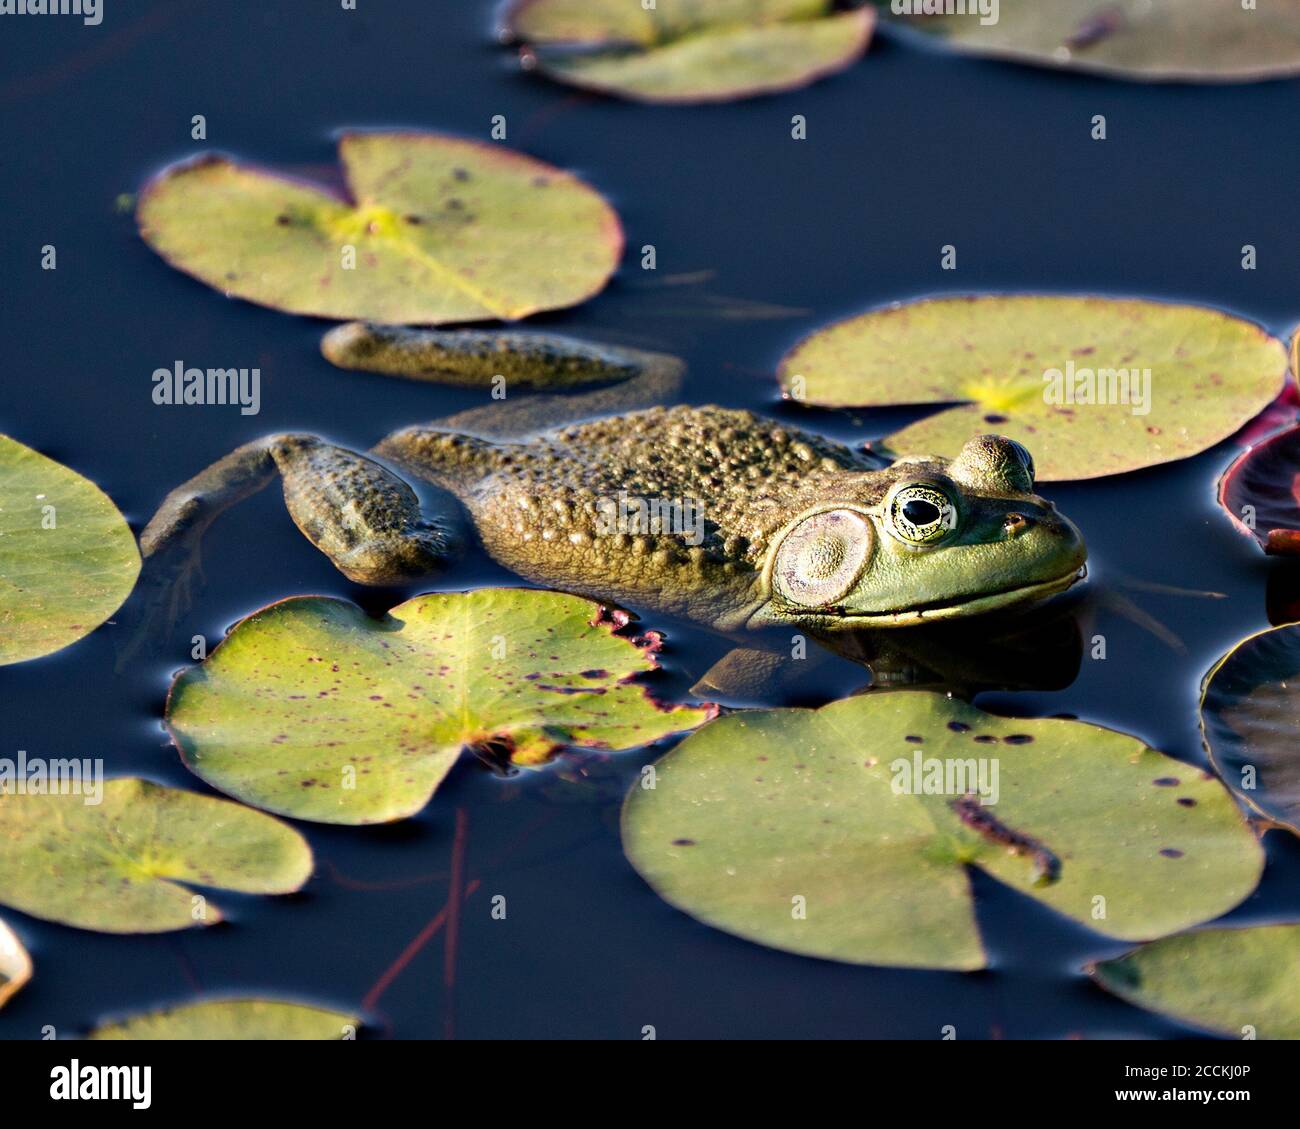 Frosch, der auf einer Seerose im Wasser sitzt, zeigt grünen Körper, Kopf, Beine, Auge in seiner Umgebung und seinem Lebensraum und schaut auf die rechte Seite. Stockfoto